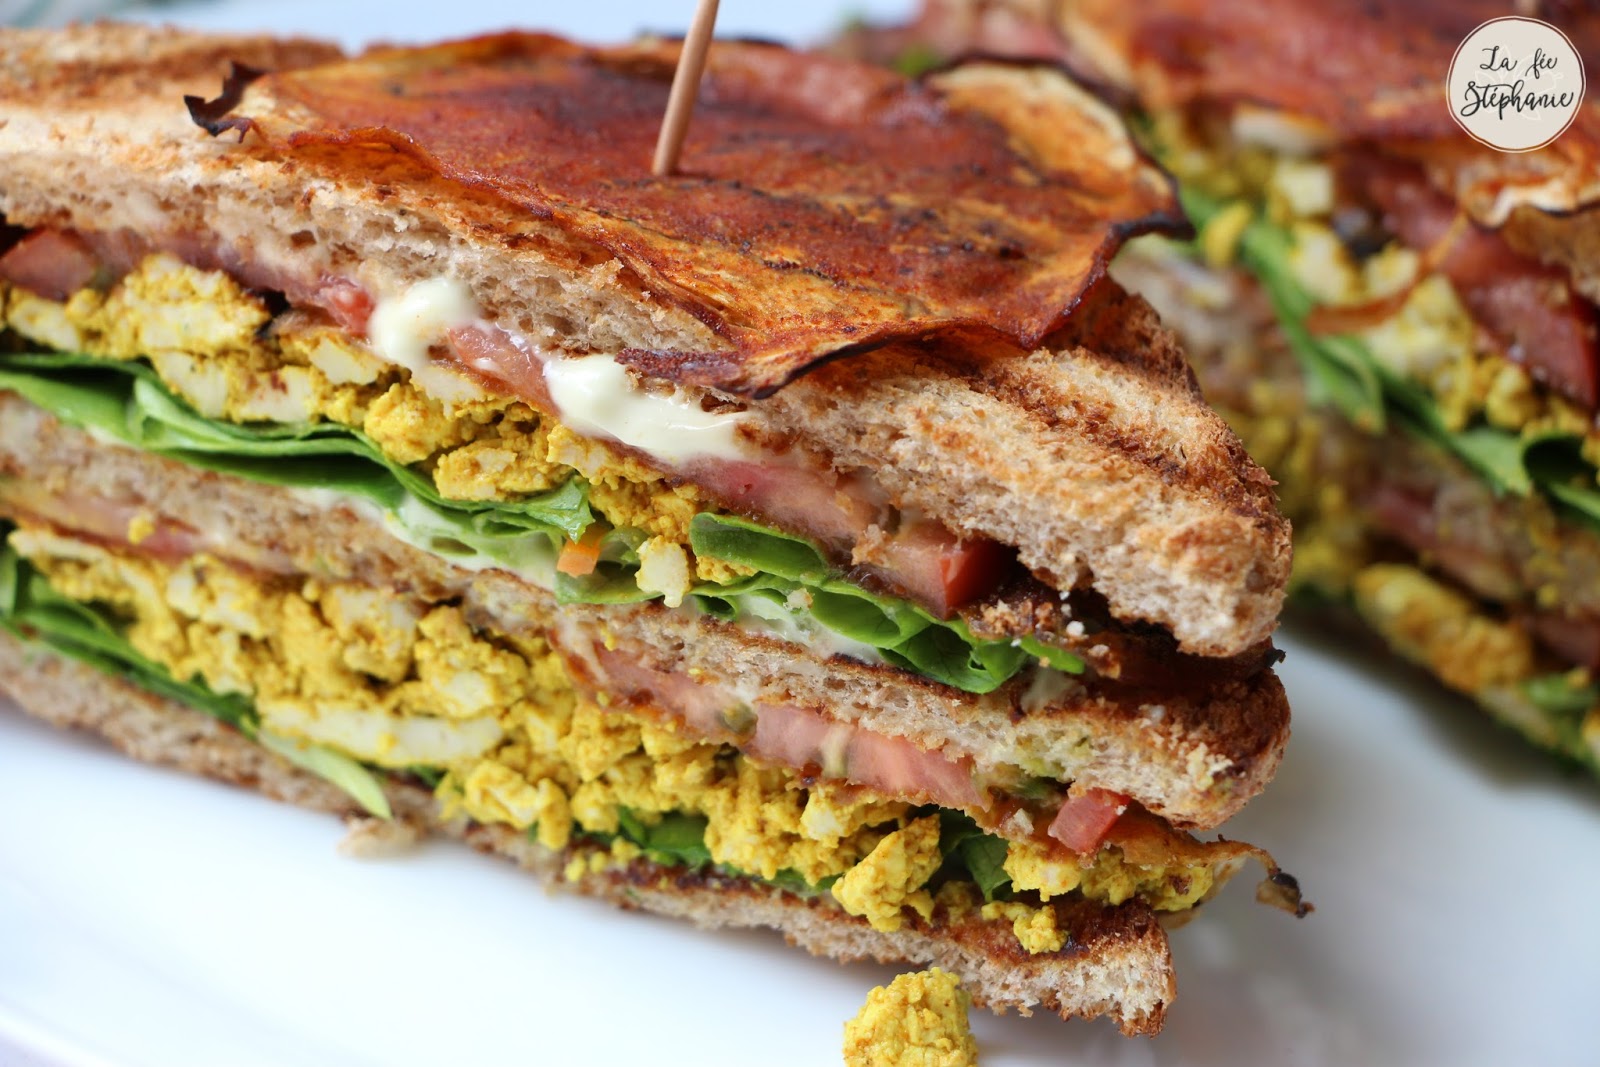 Club Sandwichs Une Recette 100 Végétale Hyper Gourmande La Fée Stéphanie